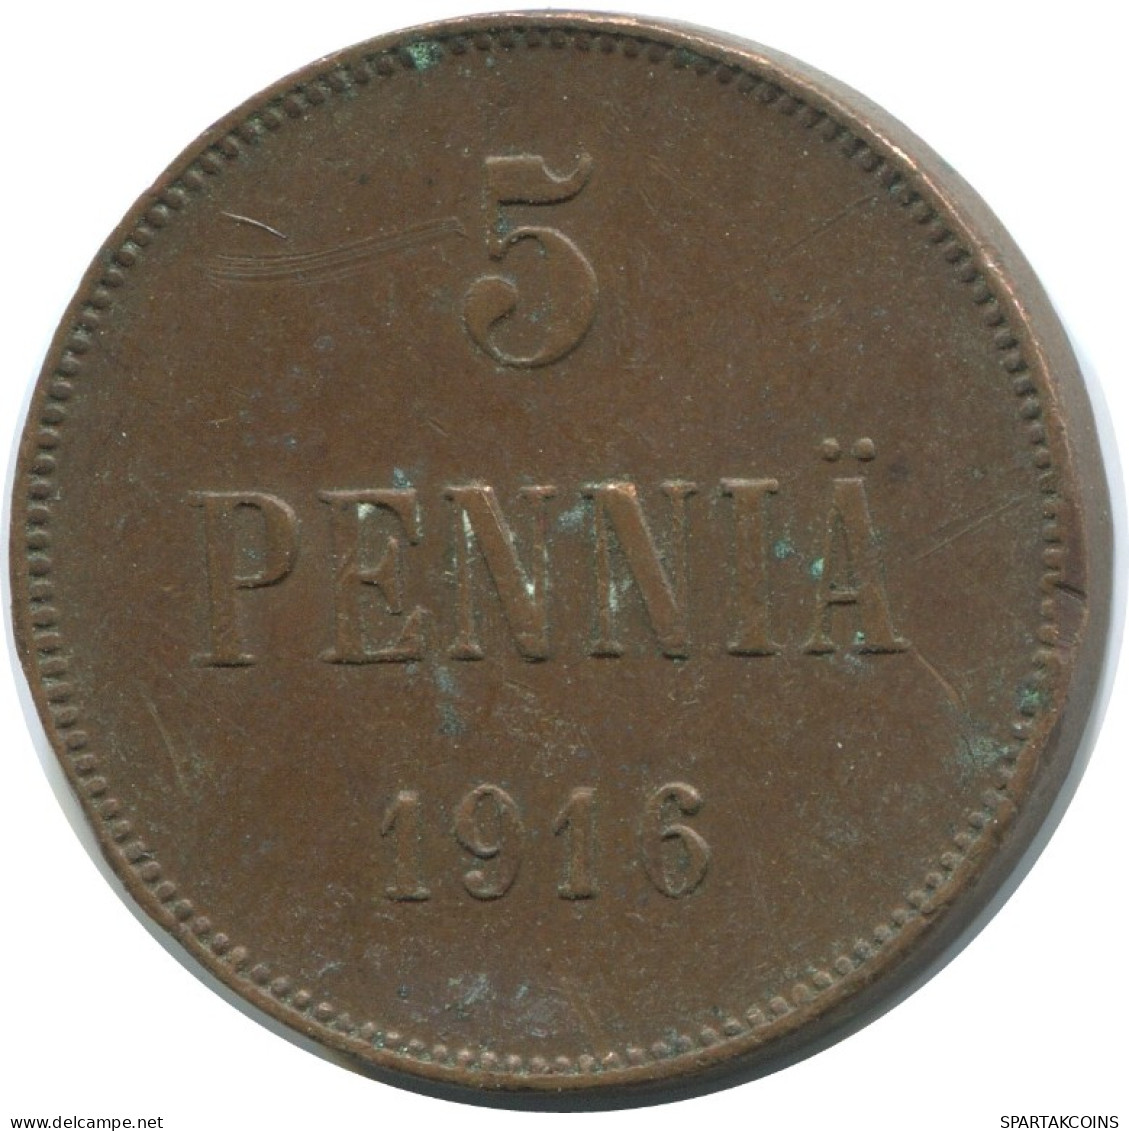 5 PENNIA 1916 FINLAND Coin RUSSIA EMPIRE #AB261.5.U.A - Finland